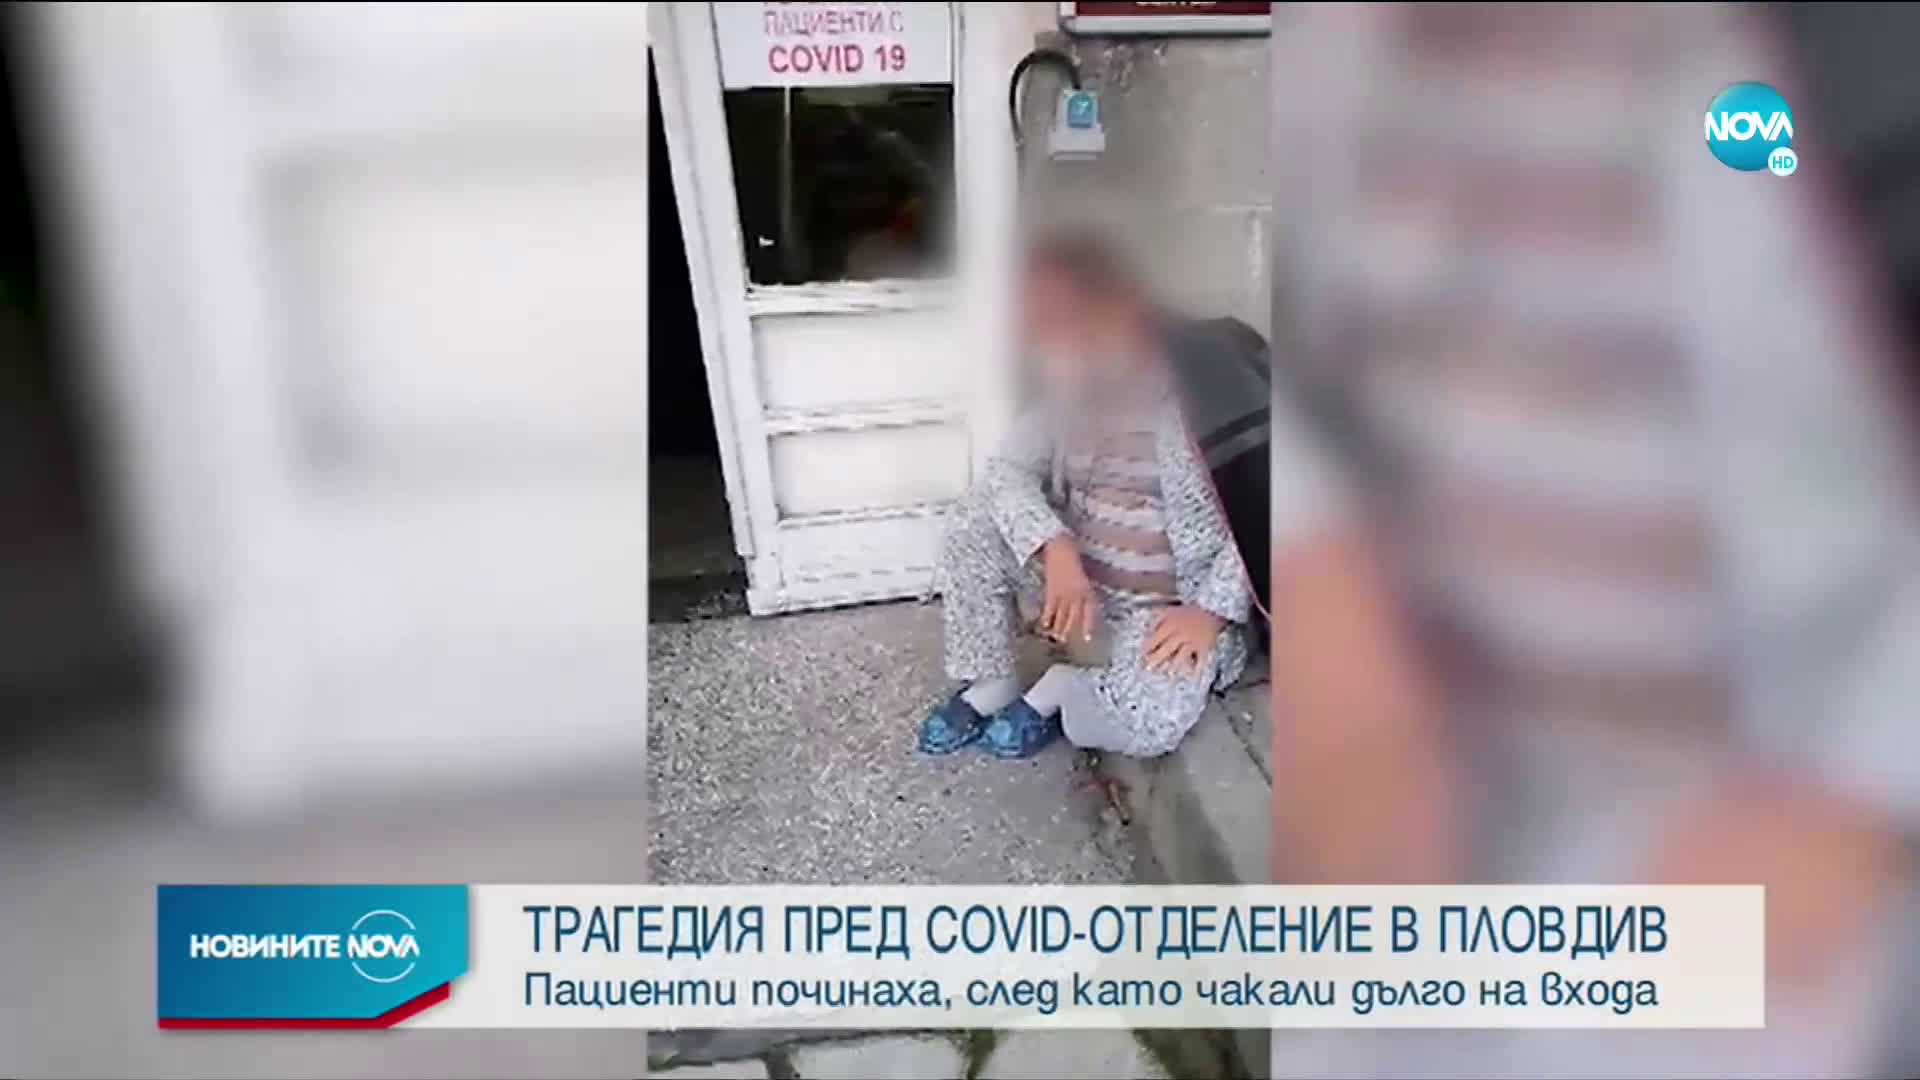 Съпругата на починал с COVID-19 в Пловдив: Той лежа 20 мин. без кислород на площадка между етажите в